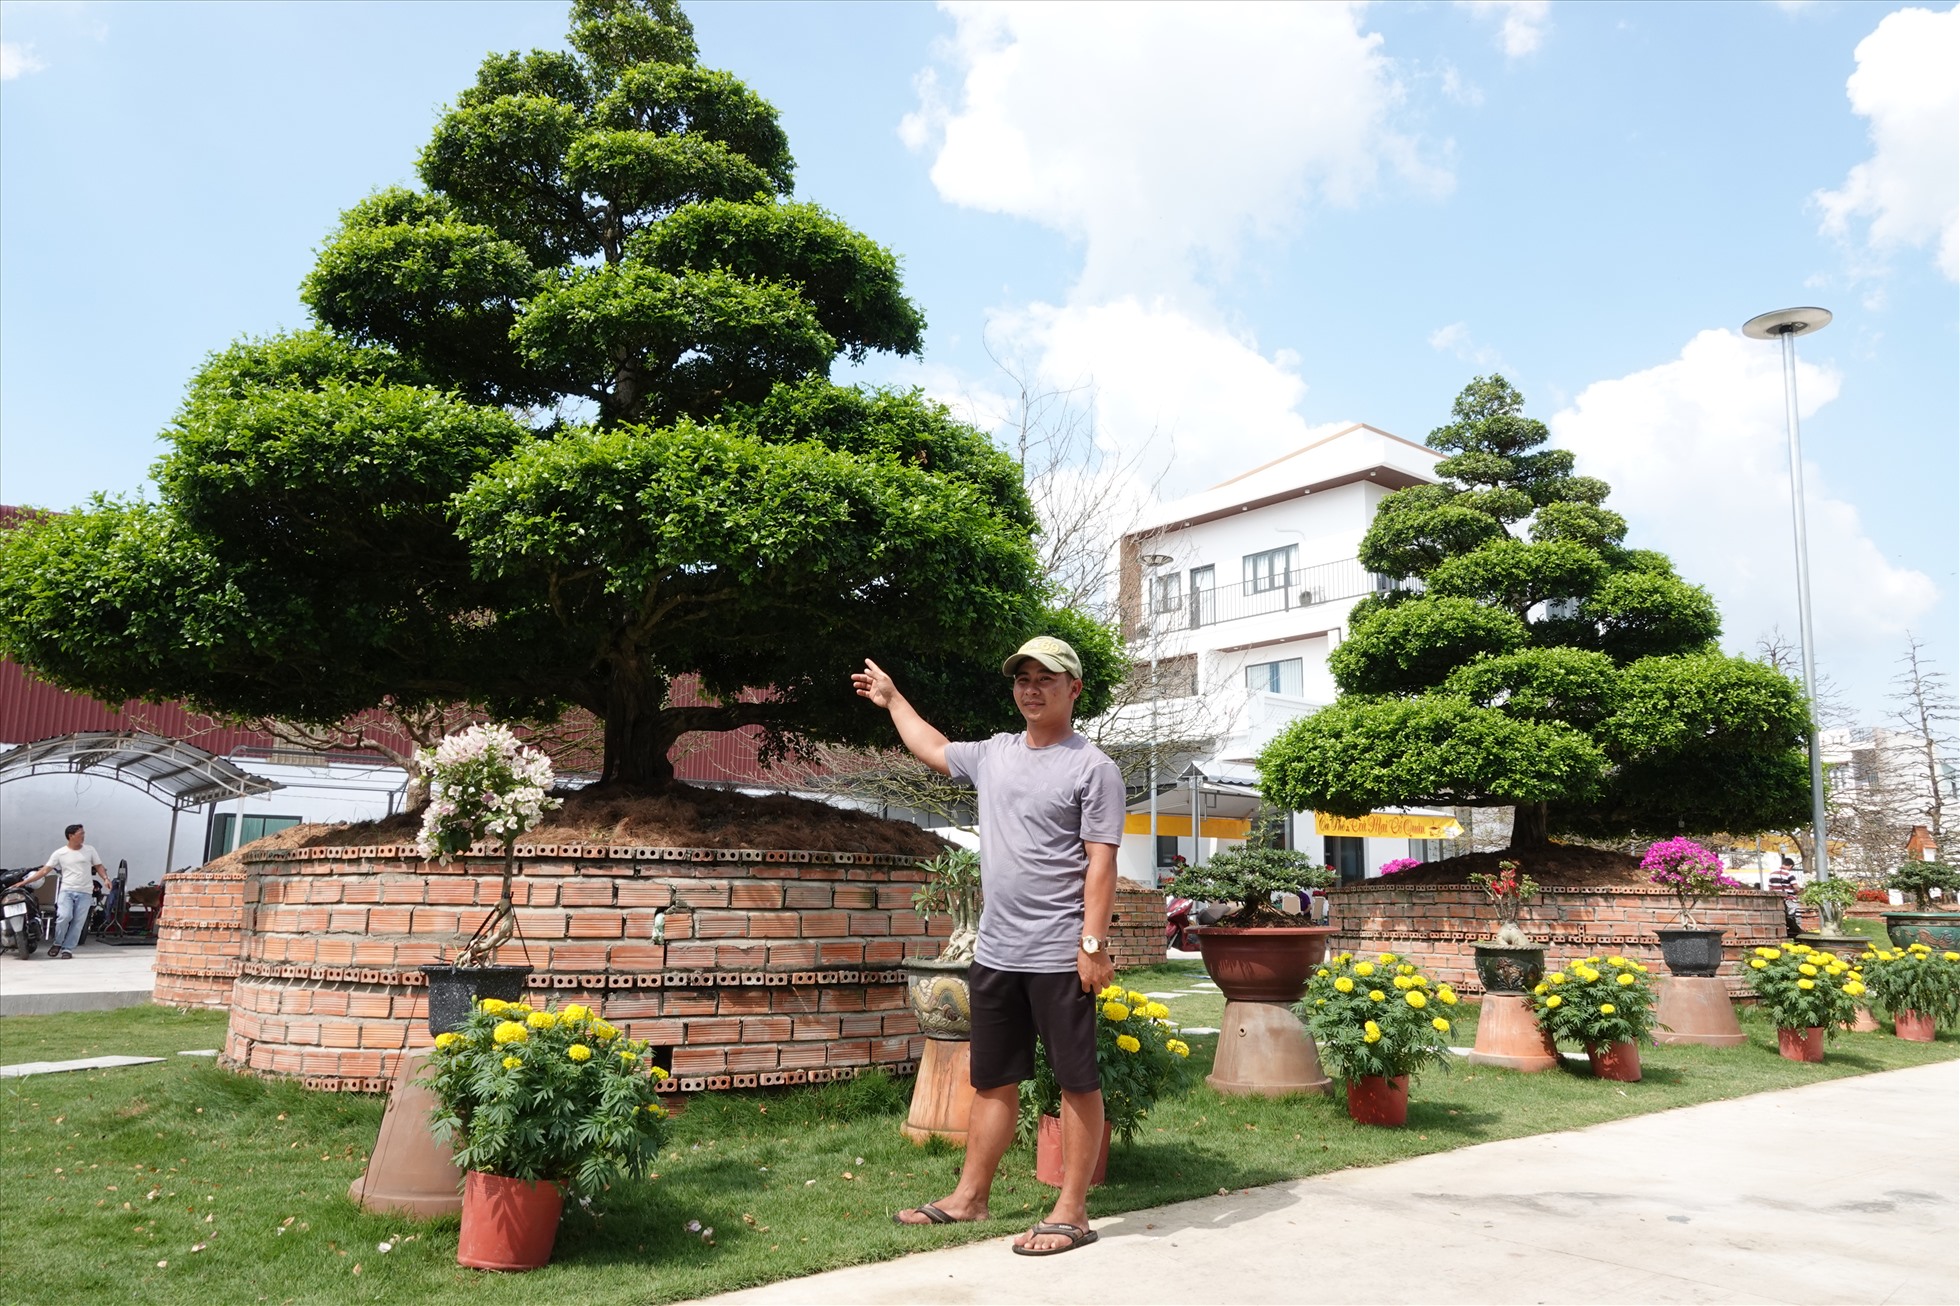 Anh Nguyễn Hữu Thái (28 tuổi) đại diện vườn nguyệt quế cho biết, 4 cây trên được gia chủ mua tại vườn của một người dân ở tỉnh Tiền Giang vào năm 2022. Sau đó cây được chuyển về vườn ở TP.Long Xuyên trồng và trưng bày cho người đam mê cây kiểng đến tham quan.